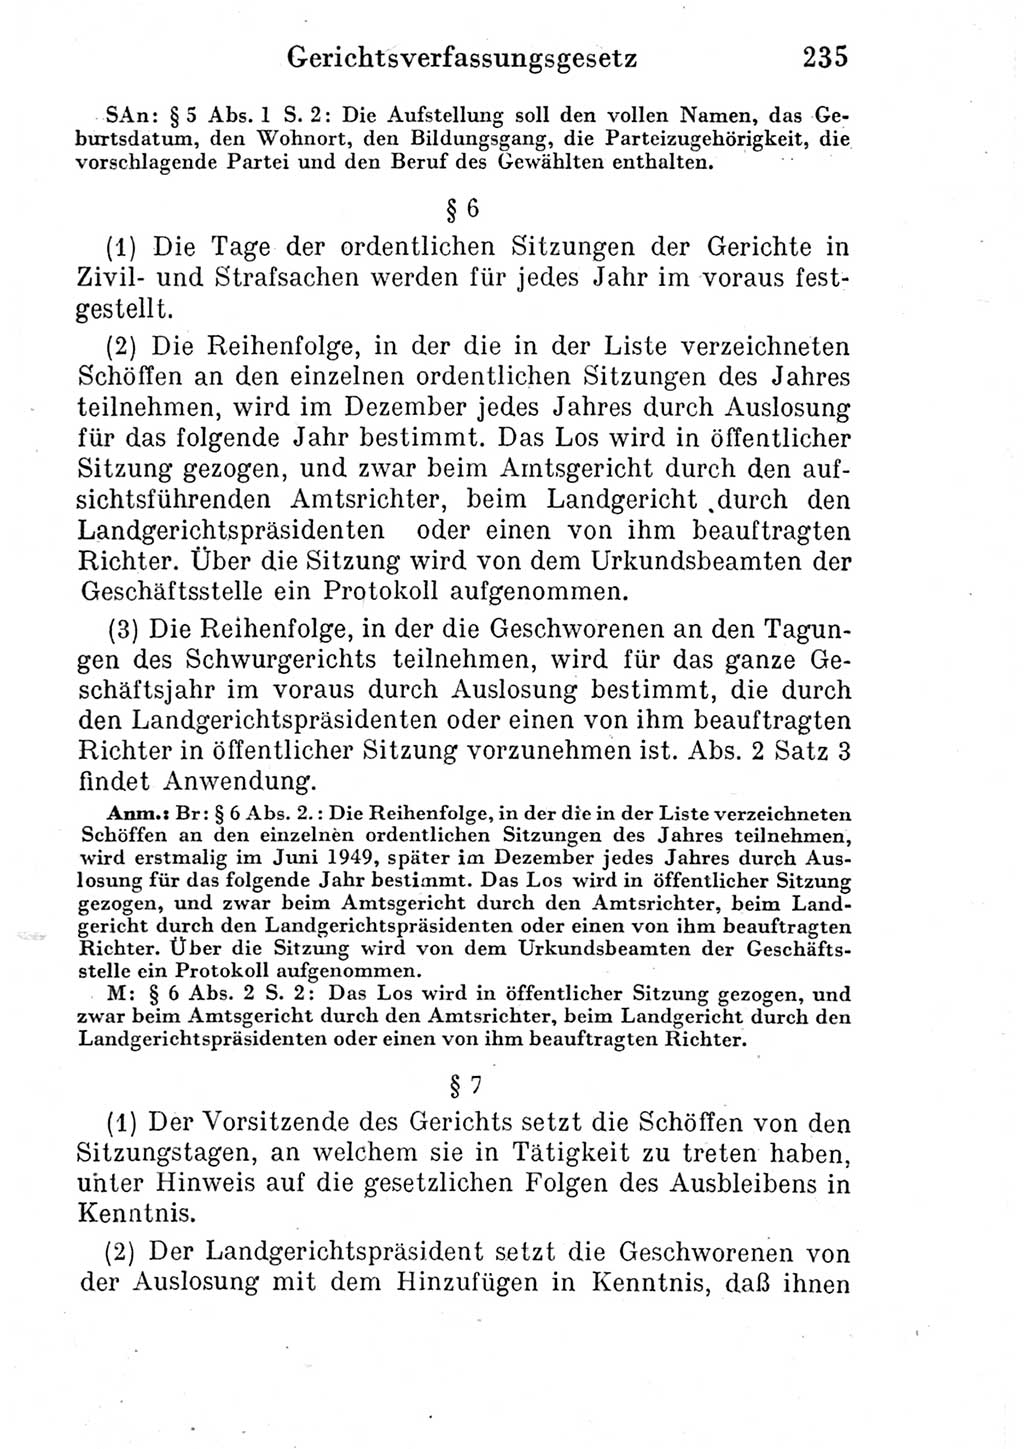 Strafprozeßordnung (StPO), Gerichtsverfassungsgesetz (GVG) und zahlreiche Nebengesetze der Deutschen Demokratischen Republik (DDR) 1950, Seite 235 (StPO GVG Ges. DDR 1950, S. 235)